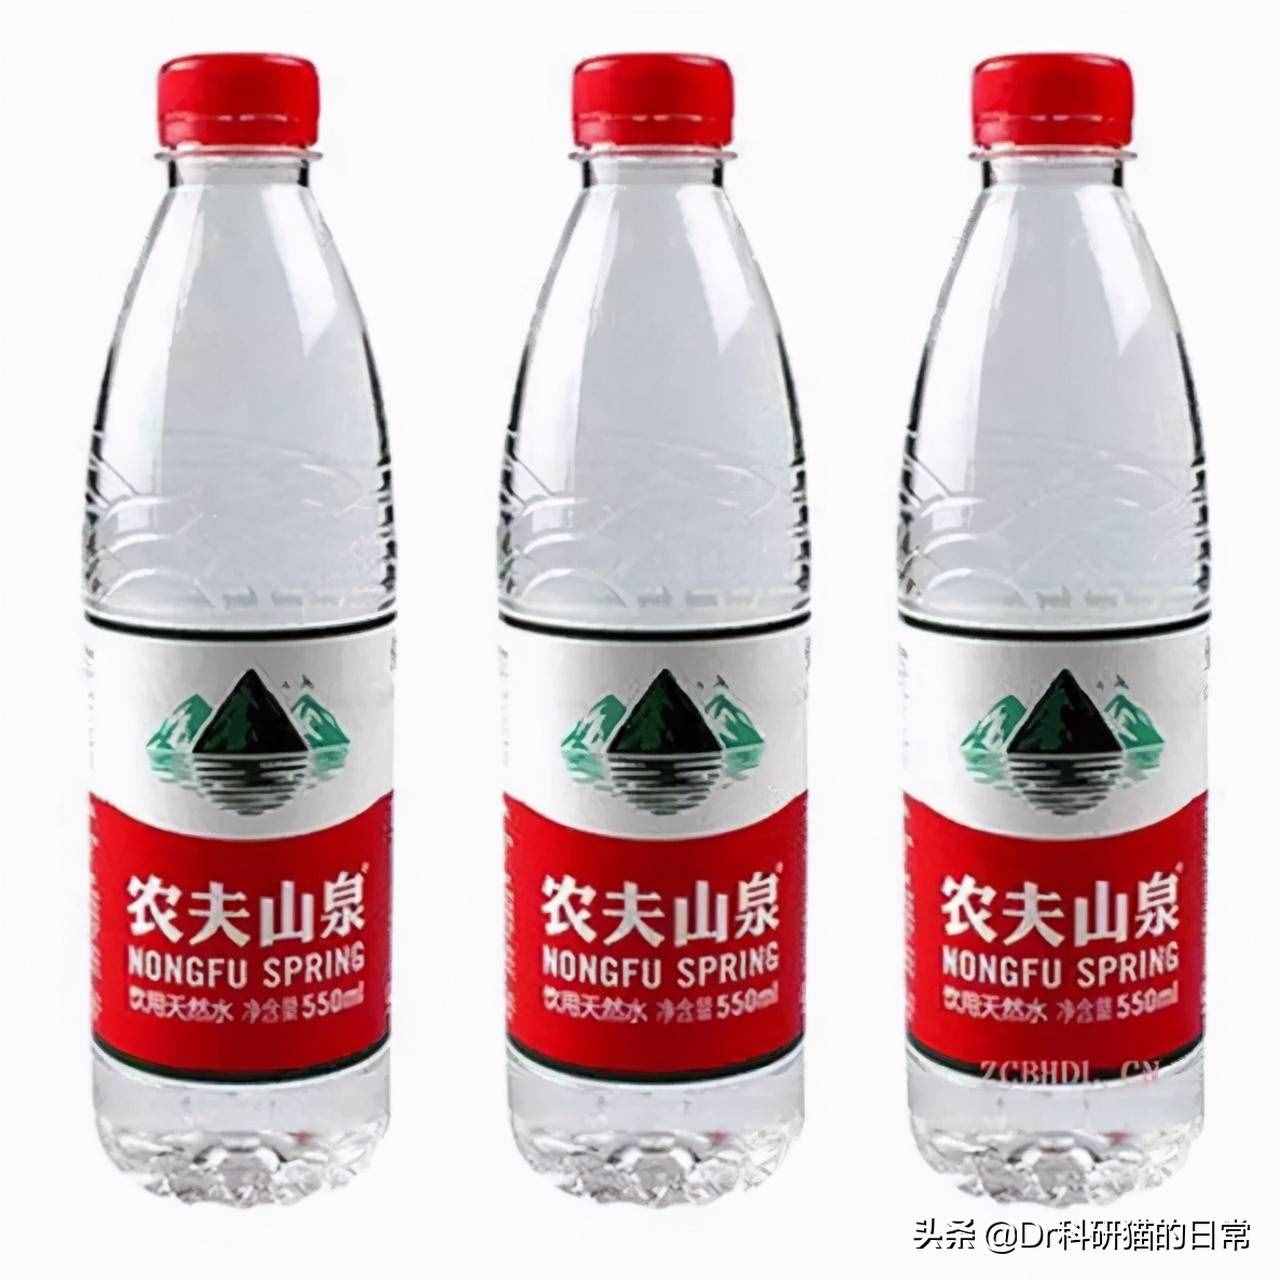 1.5元/瓶的水和8.8元/瓶的水有什么区别？